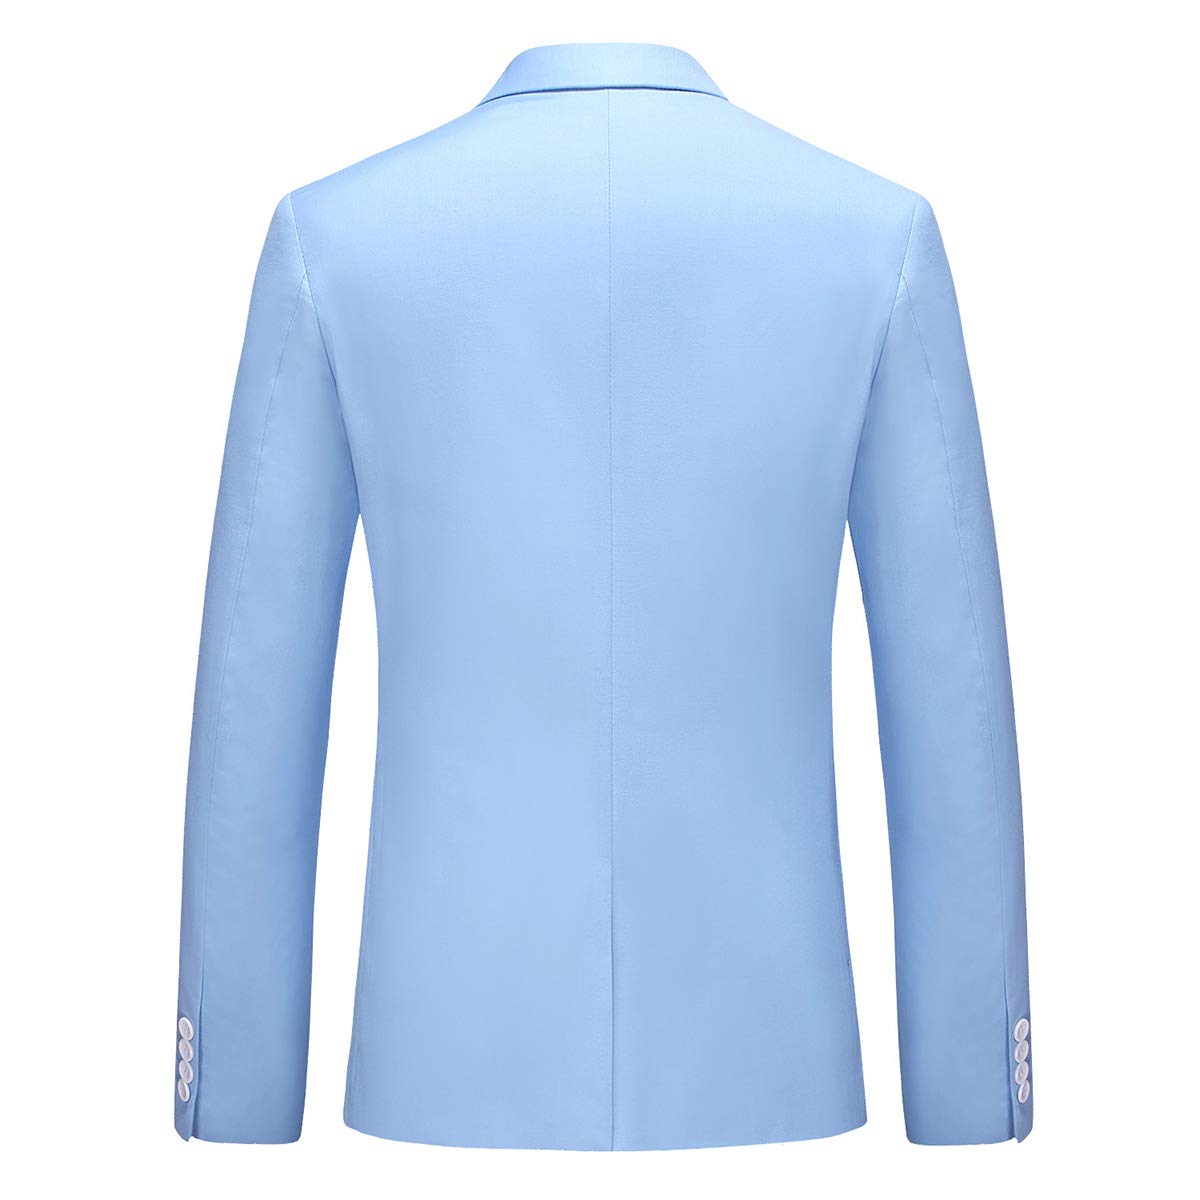 Mens 3 Piece Dress Suit Formal Casual Tux Vest Trousers Light Blue